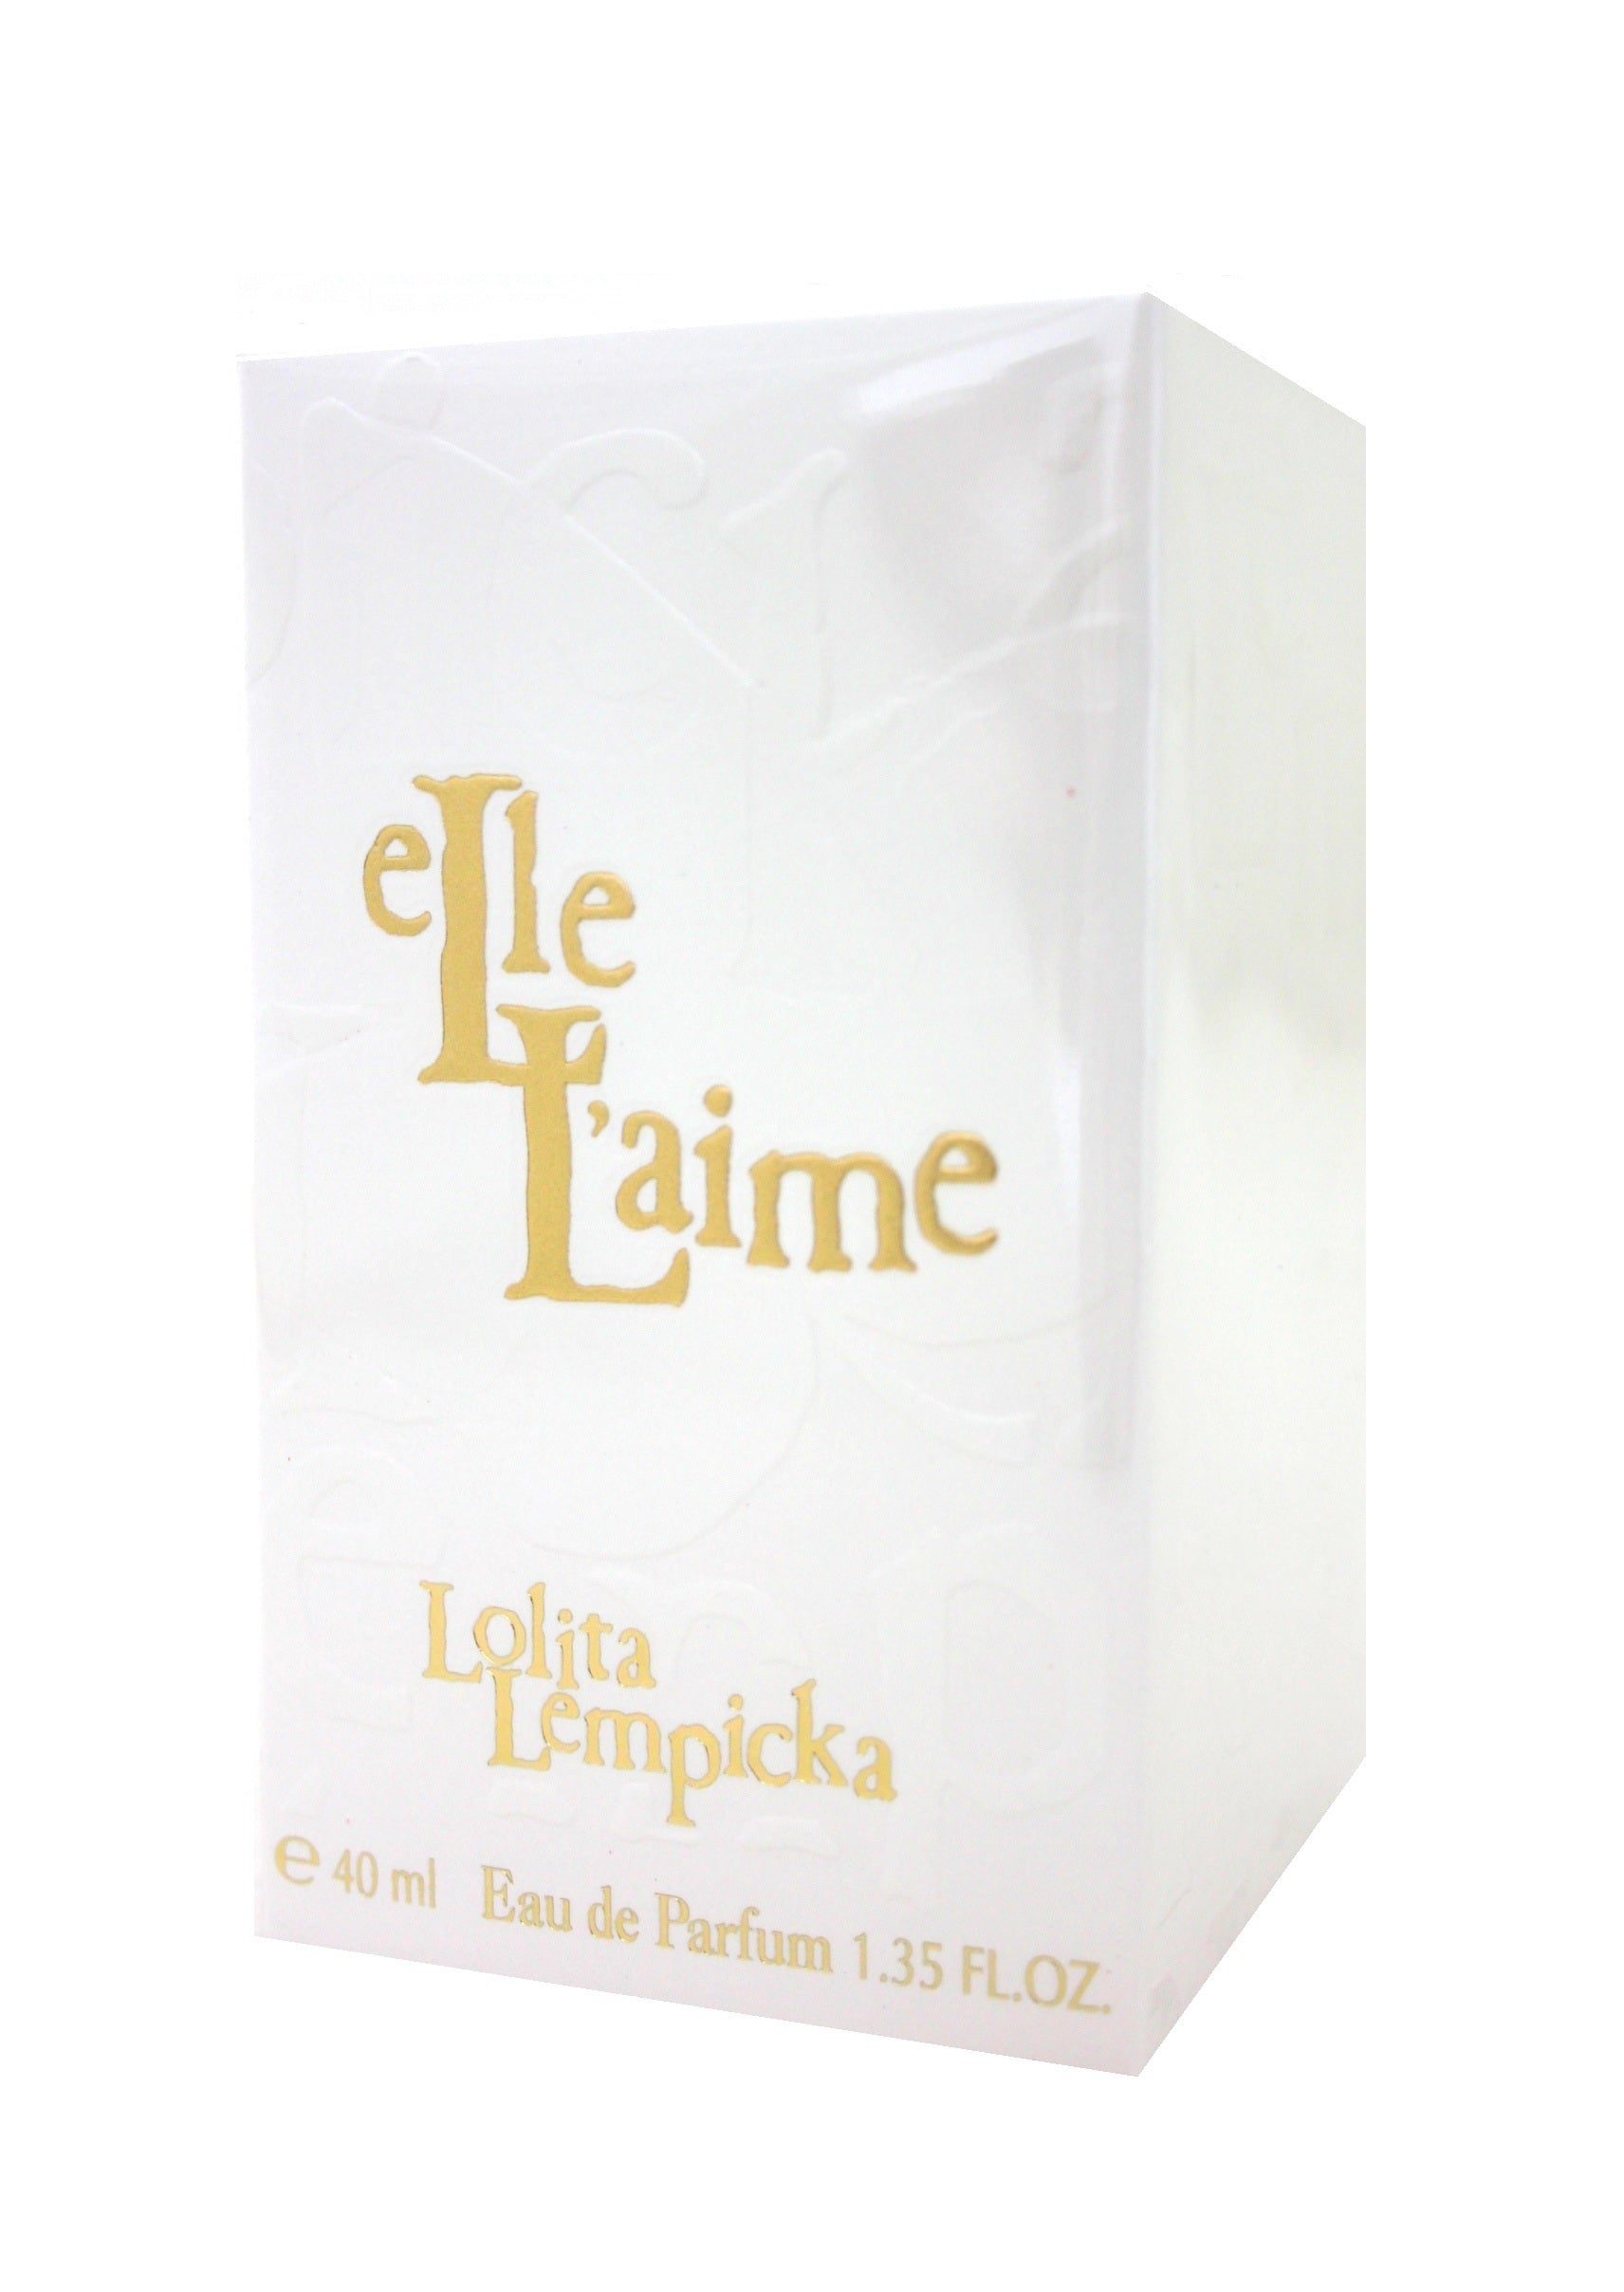 Lolita Lempicka Elle L aime Eau de Parfum 40 ml